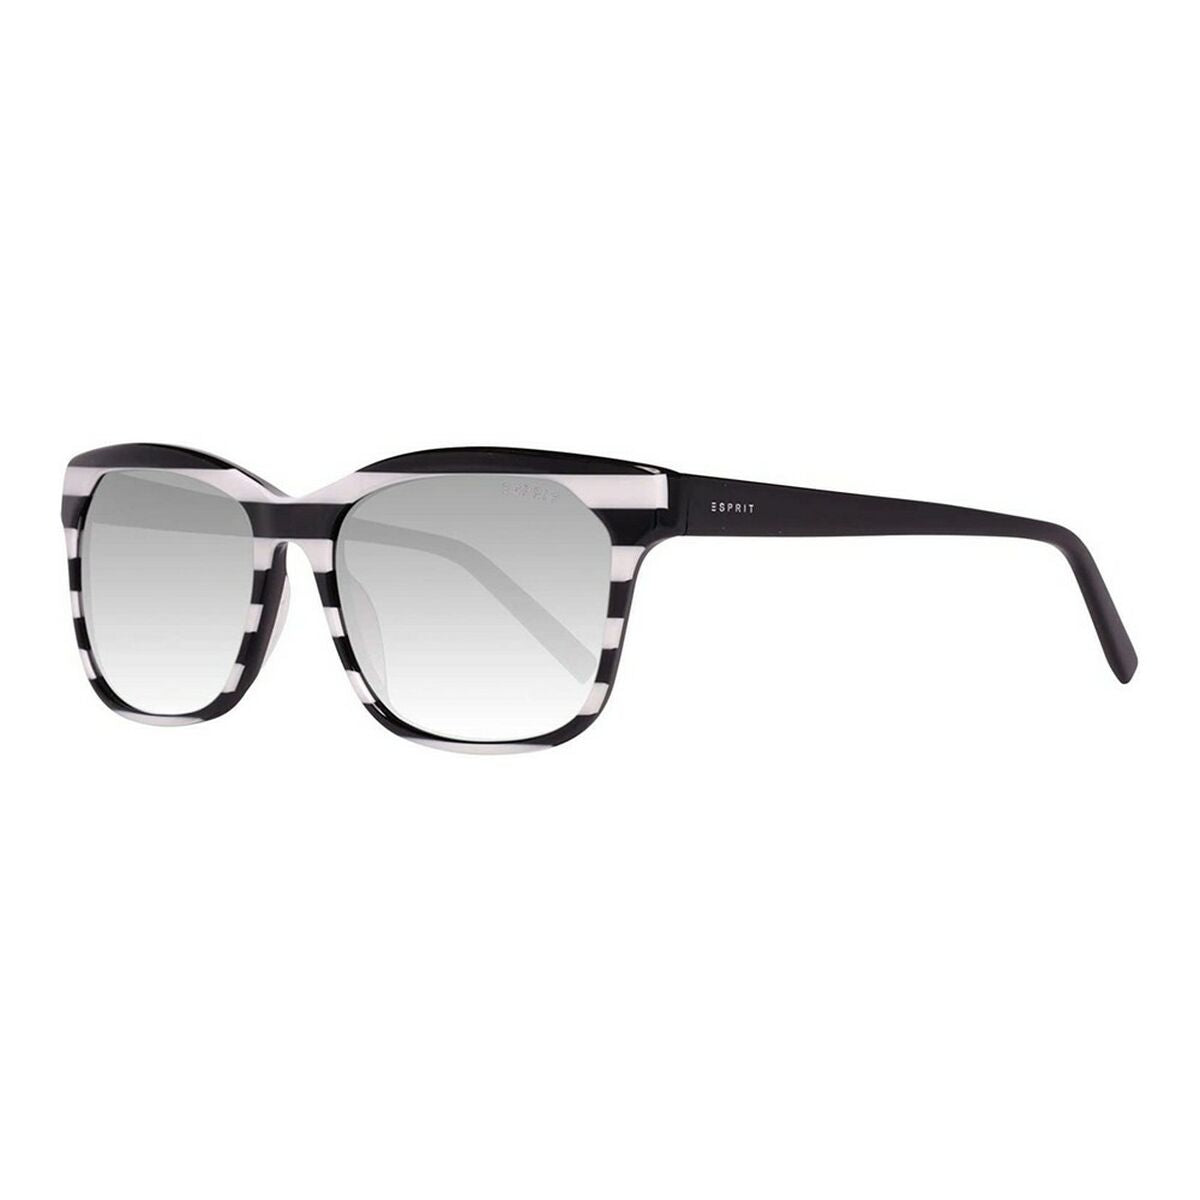 Ladies' Sunglasses Esprit ET17884 54538 ø 54 mm